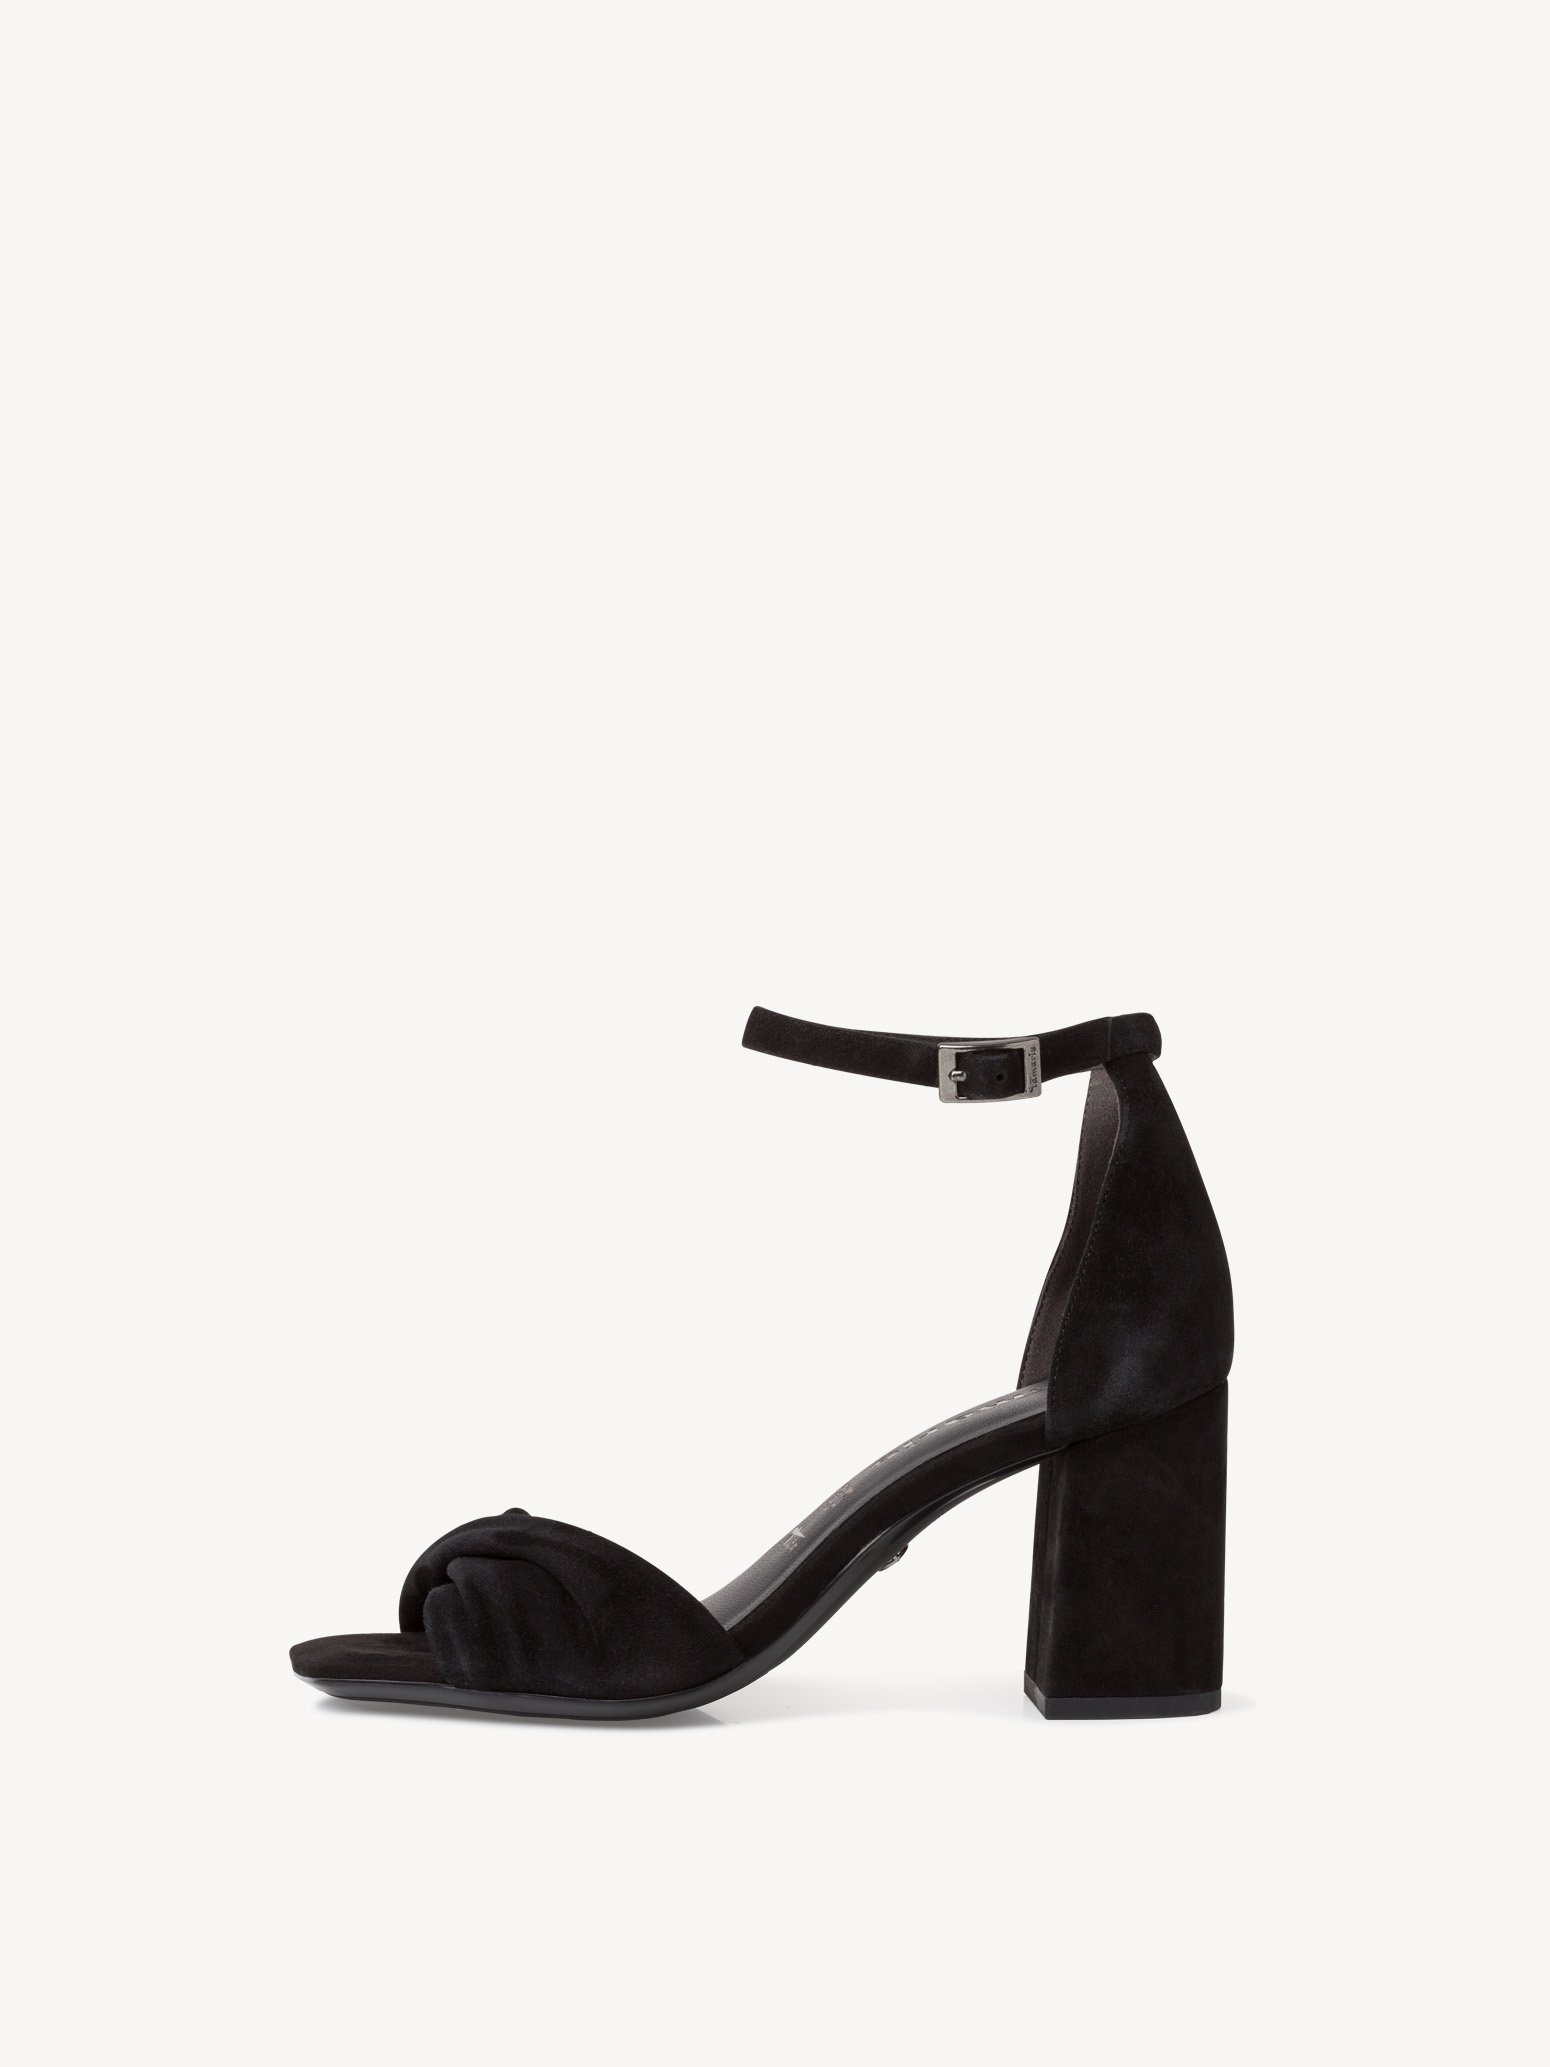 NEU Tamaris Schuhe Sandalette 1-1-28318-28-001 black schwarz 